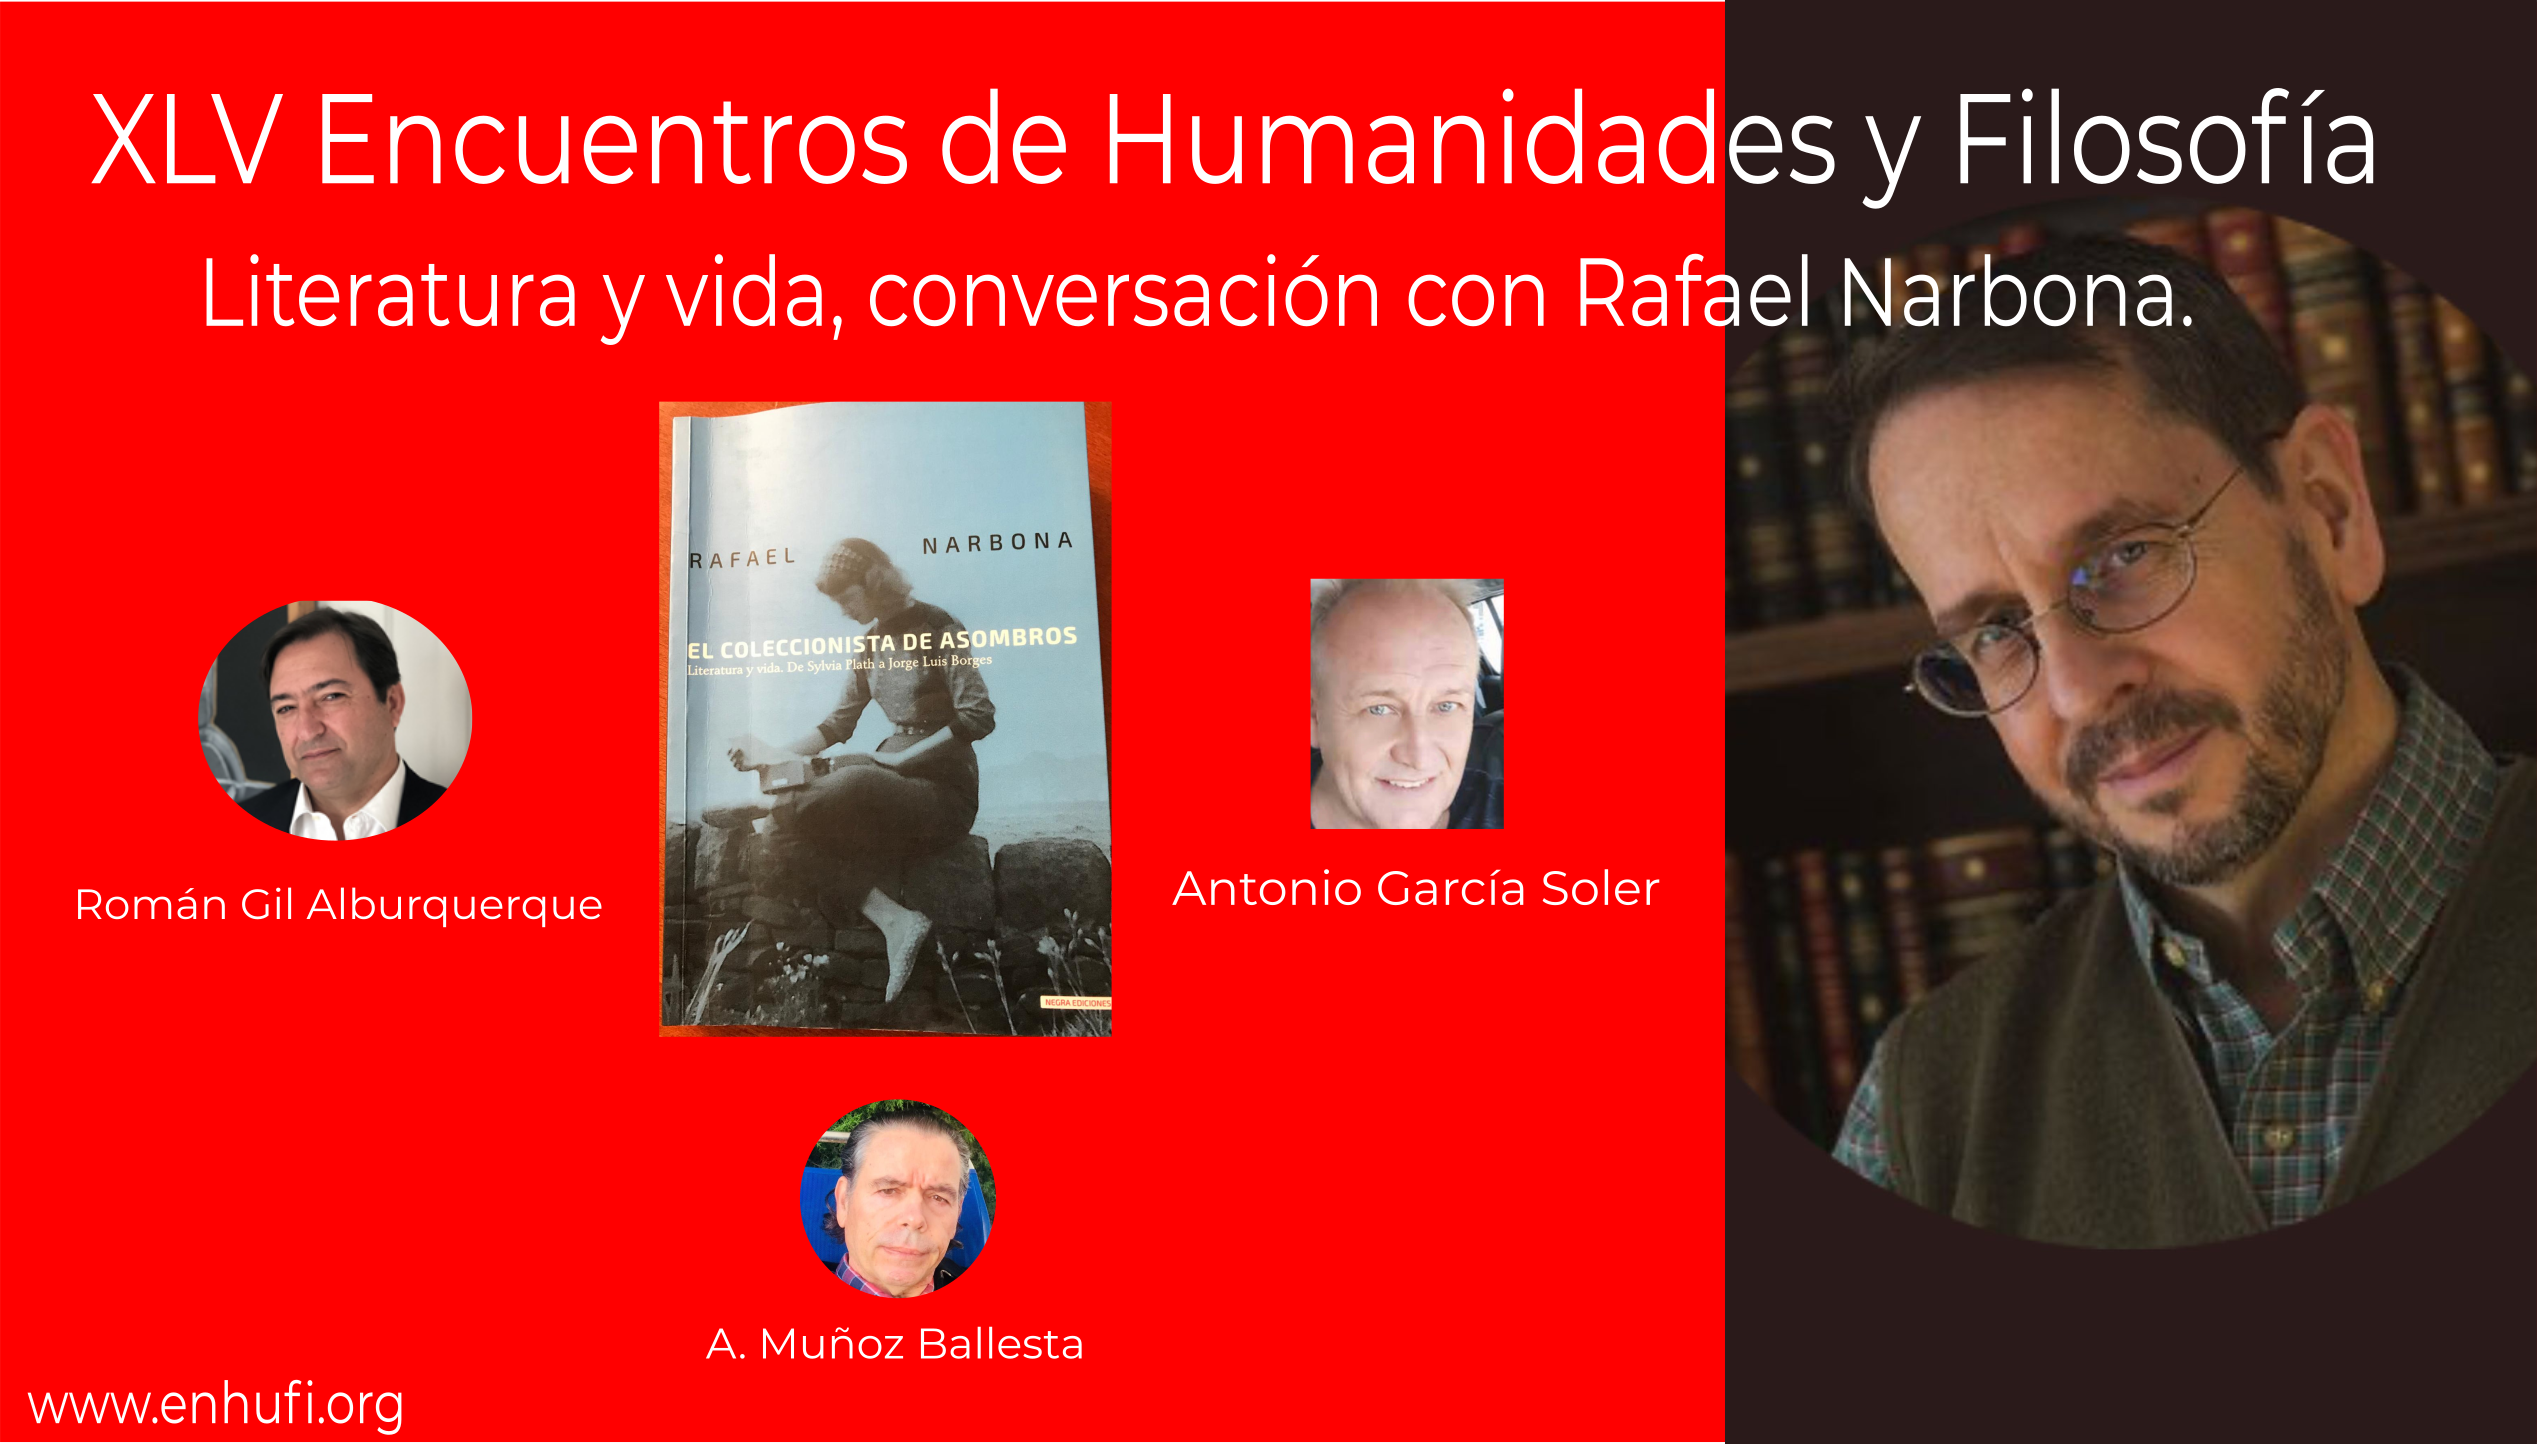 XLV Encuentros de Humanidades y Filosfofía, Literatura y vida, conversación con Rafael Narbona.